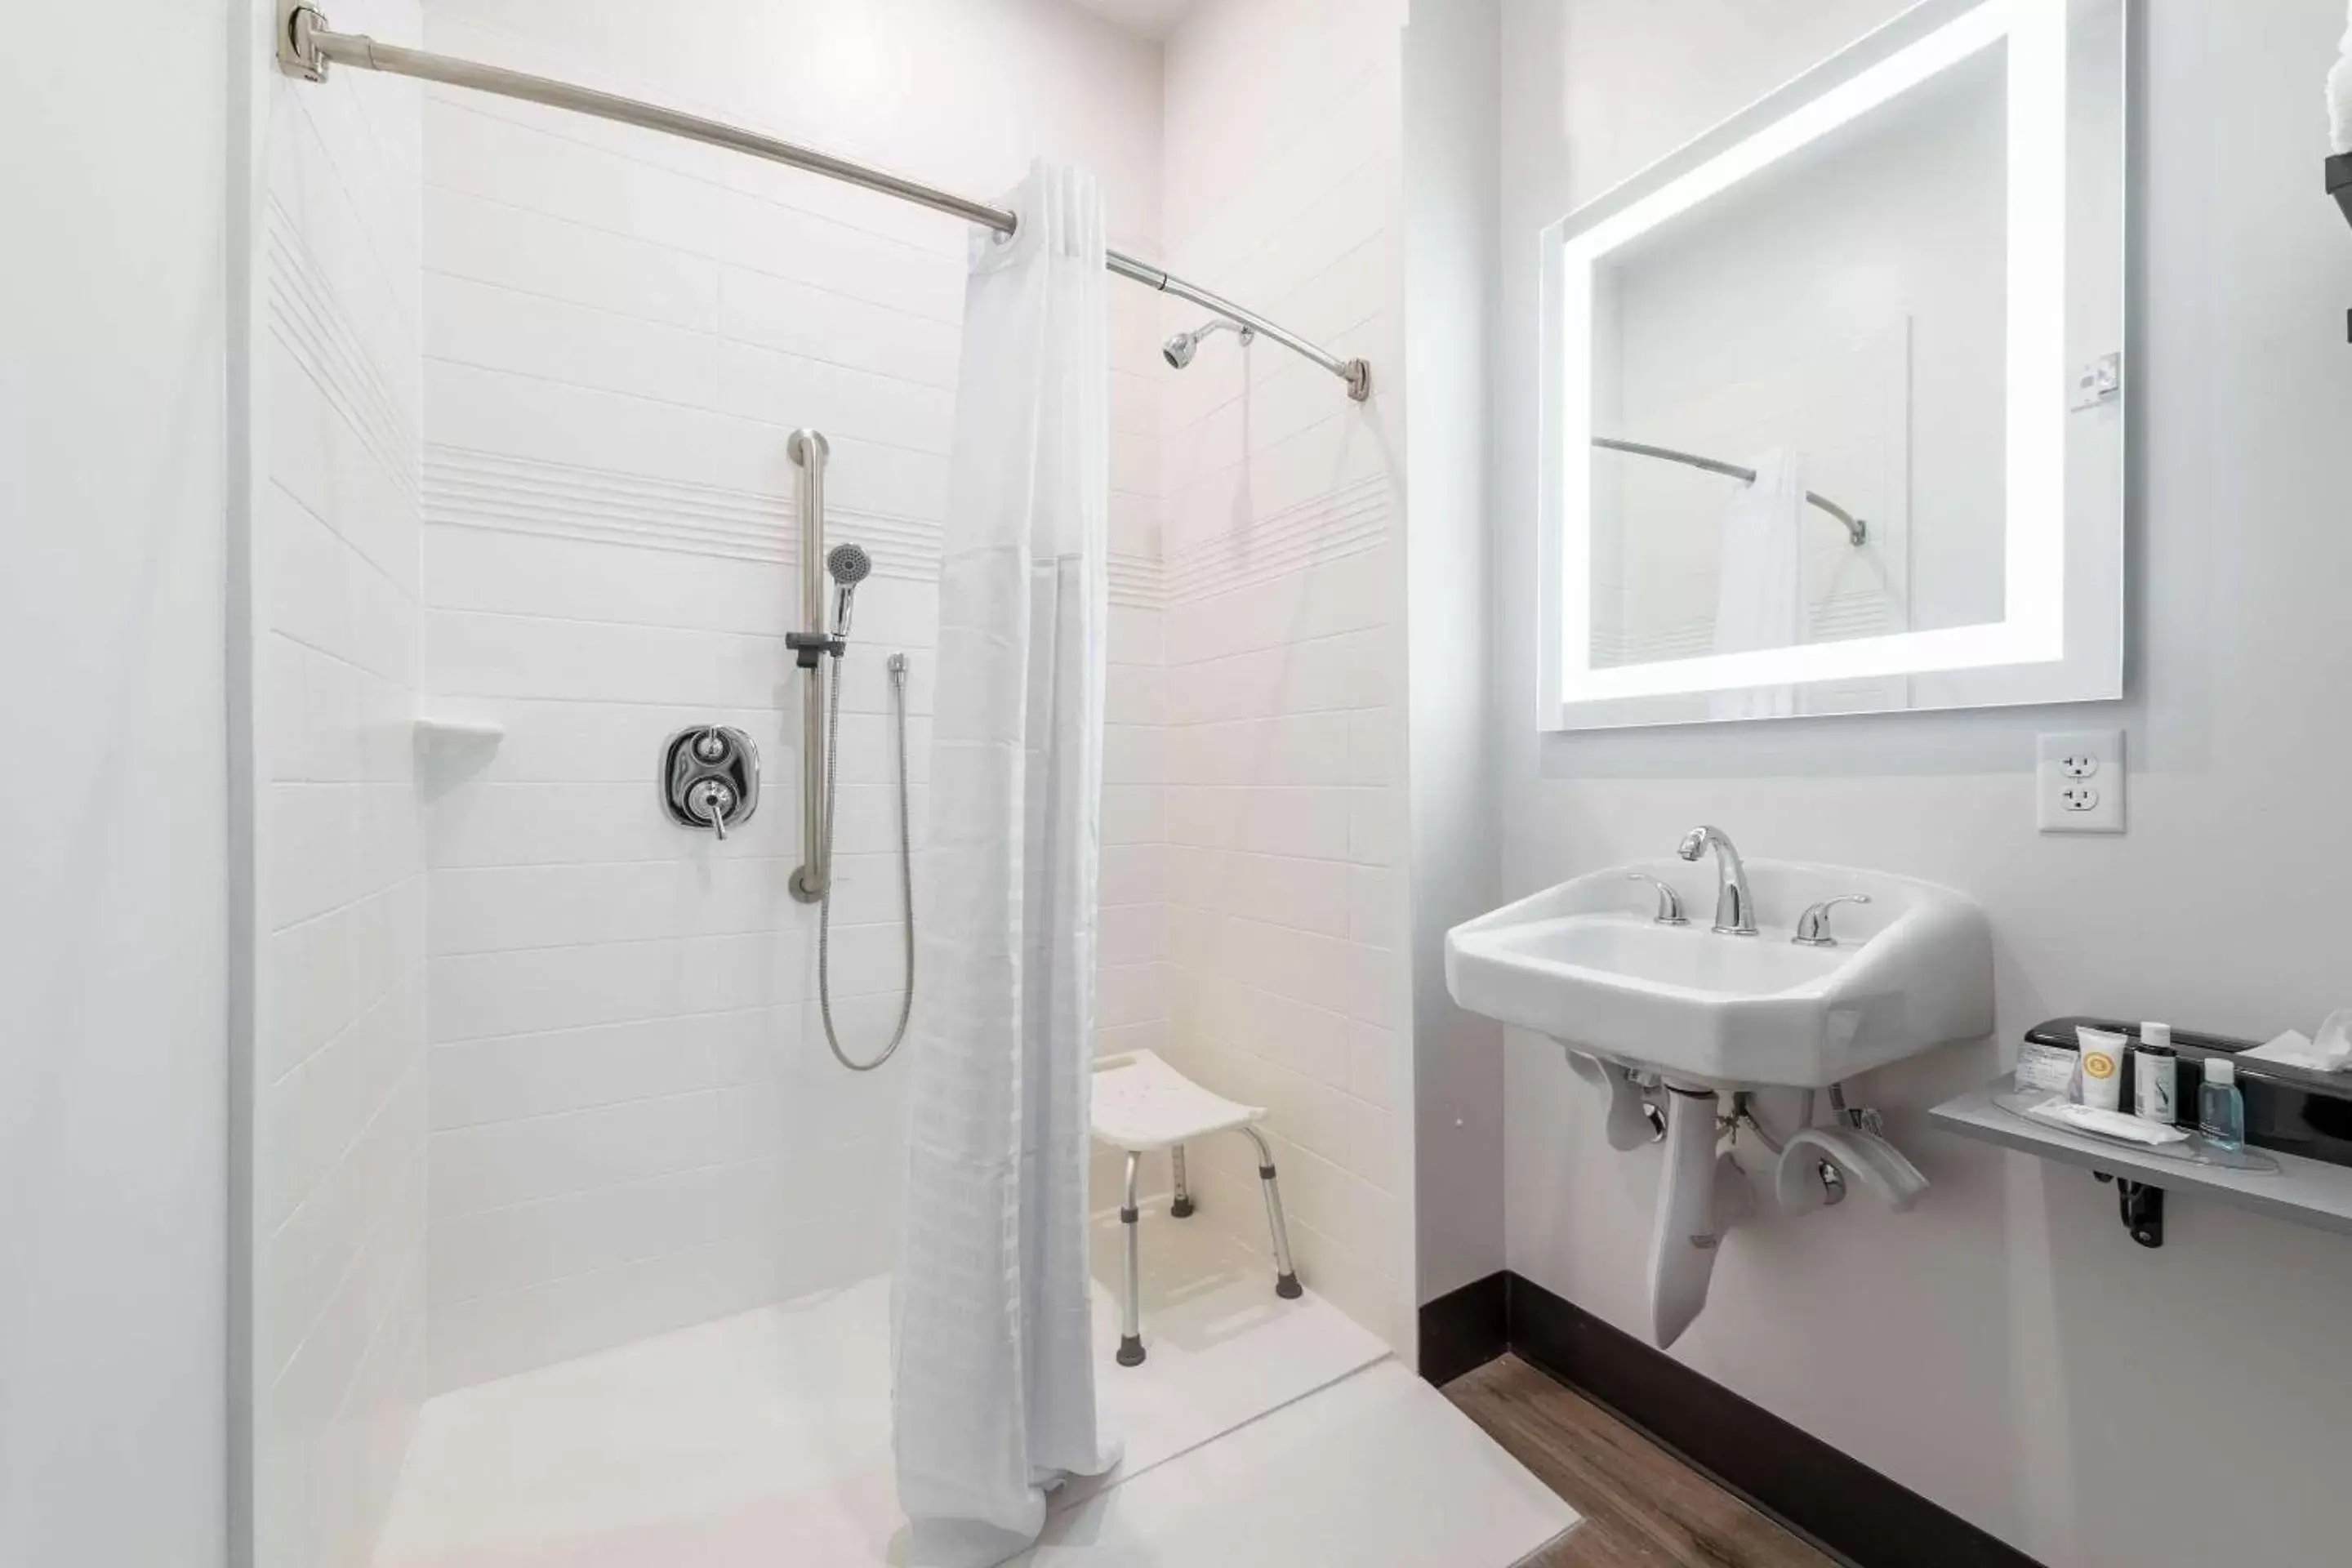 Bedroom, Bathroom in MainStay Suites Colorado Springs East - Medical Center Area